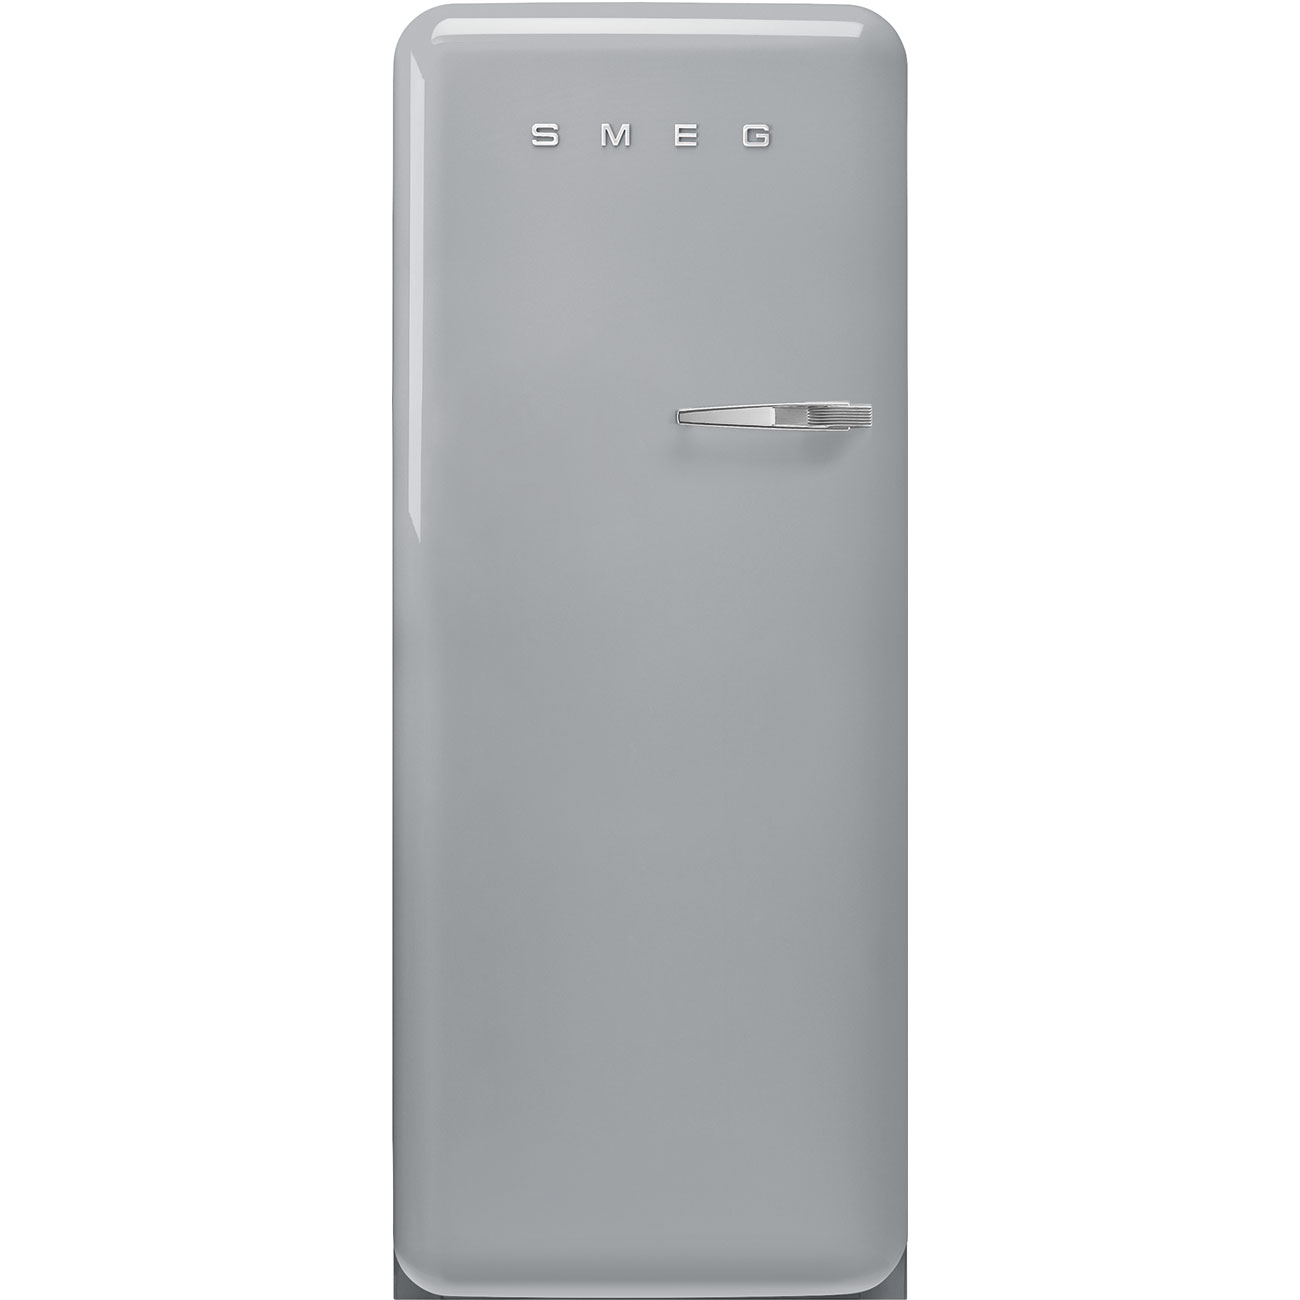 Silver refrigerator - Smeg_1